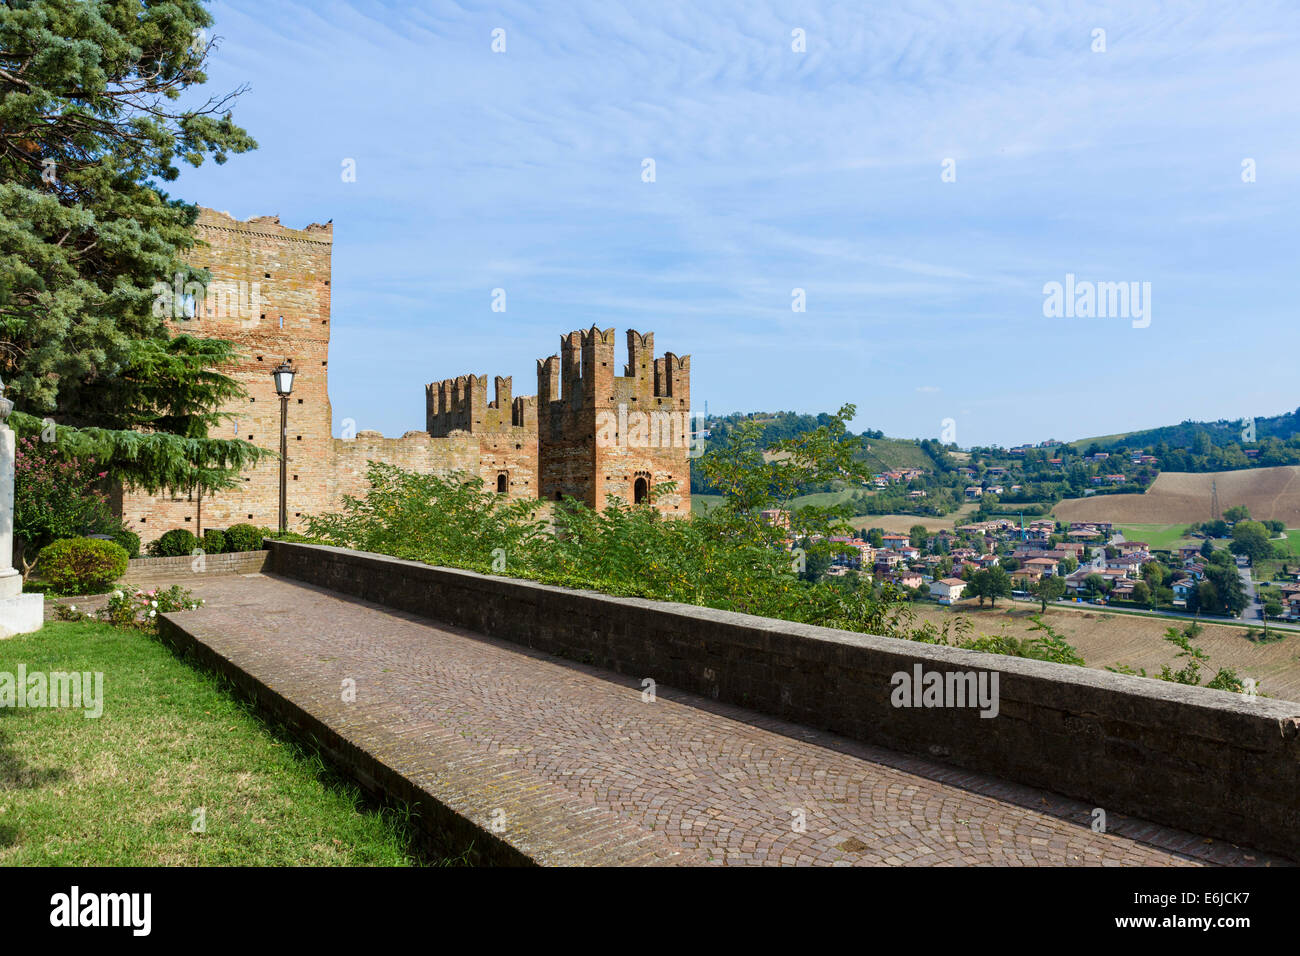 Vista della Rocca Viscontea e campagna locale dalle mura del borgo medievale di Castell'Arquato, Piacenza, Emilia Romagna, Italia Foto Stock